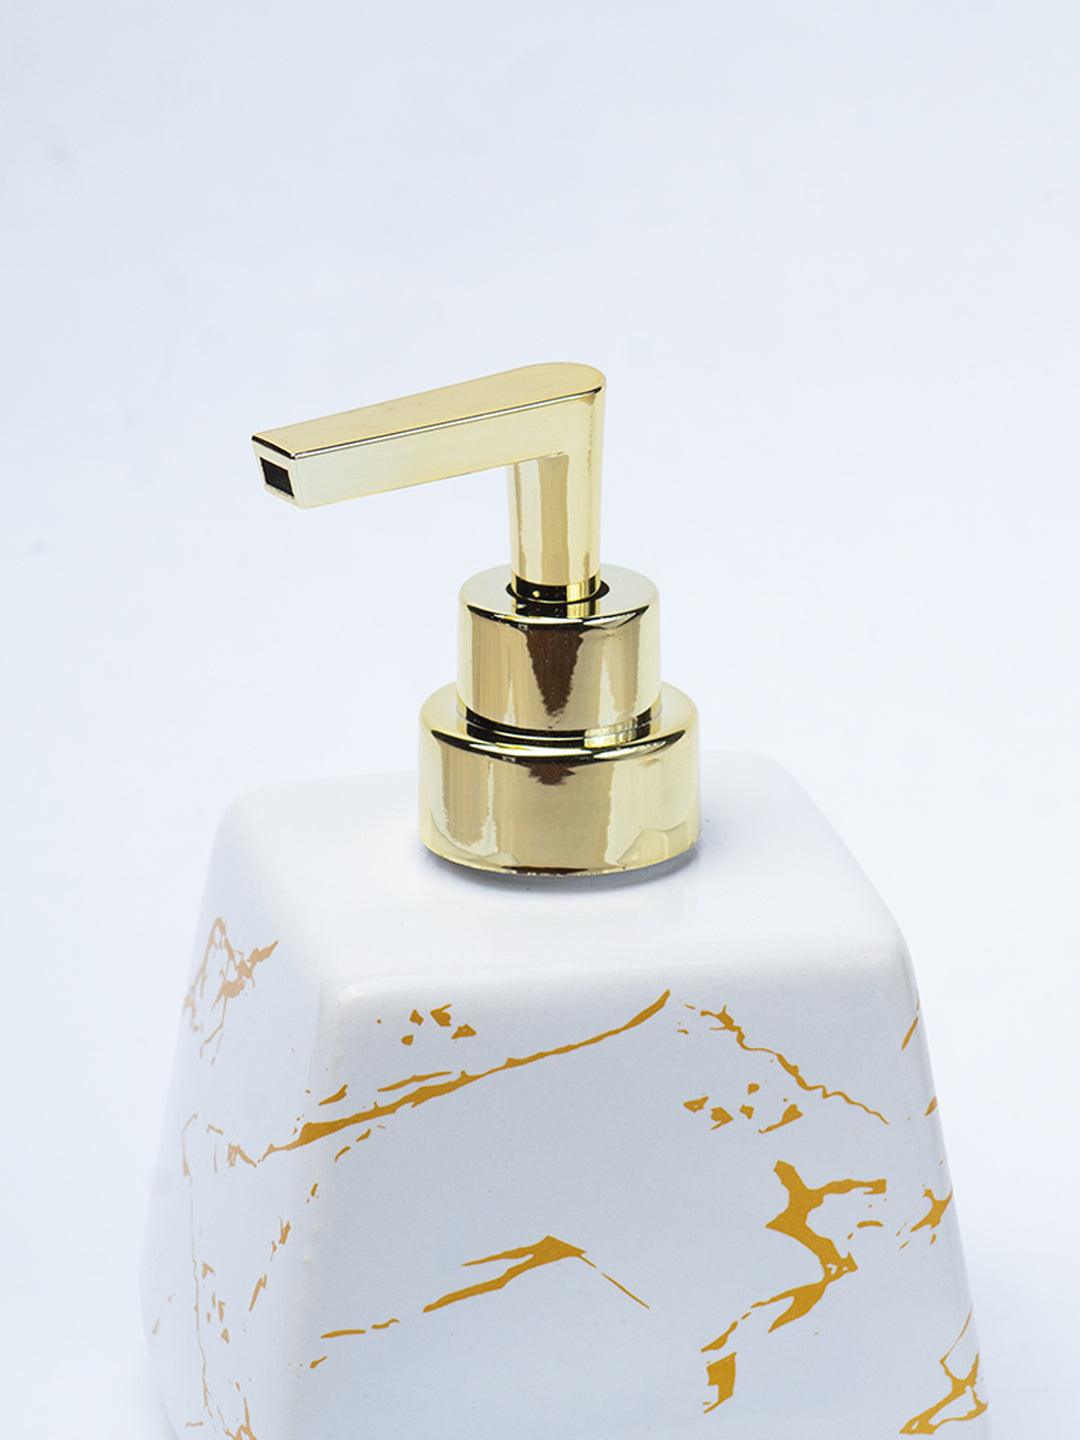 White Ceramic Soap Dispenser - Stone Finish, Bath Accessories - 4